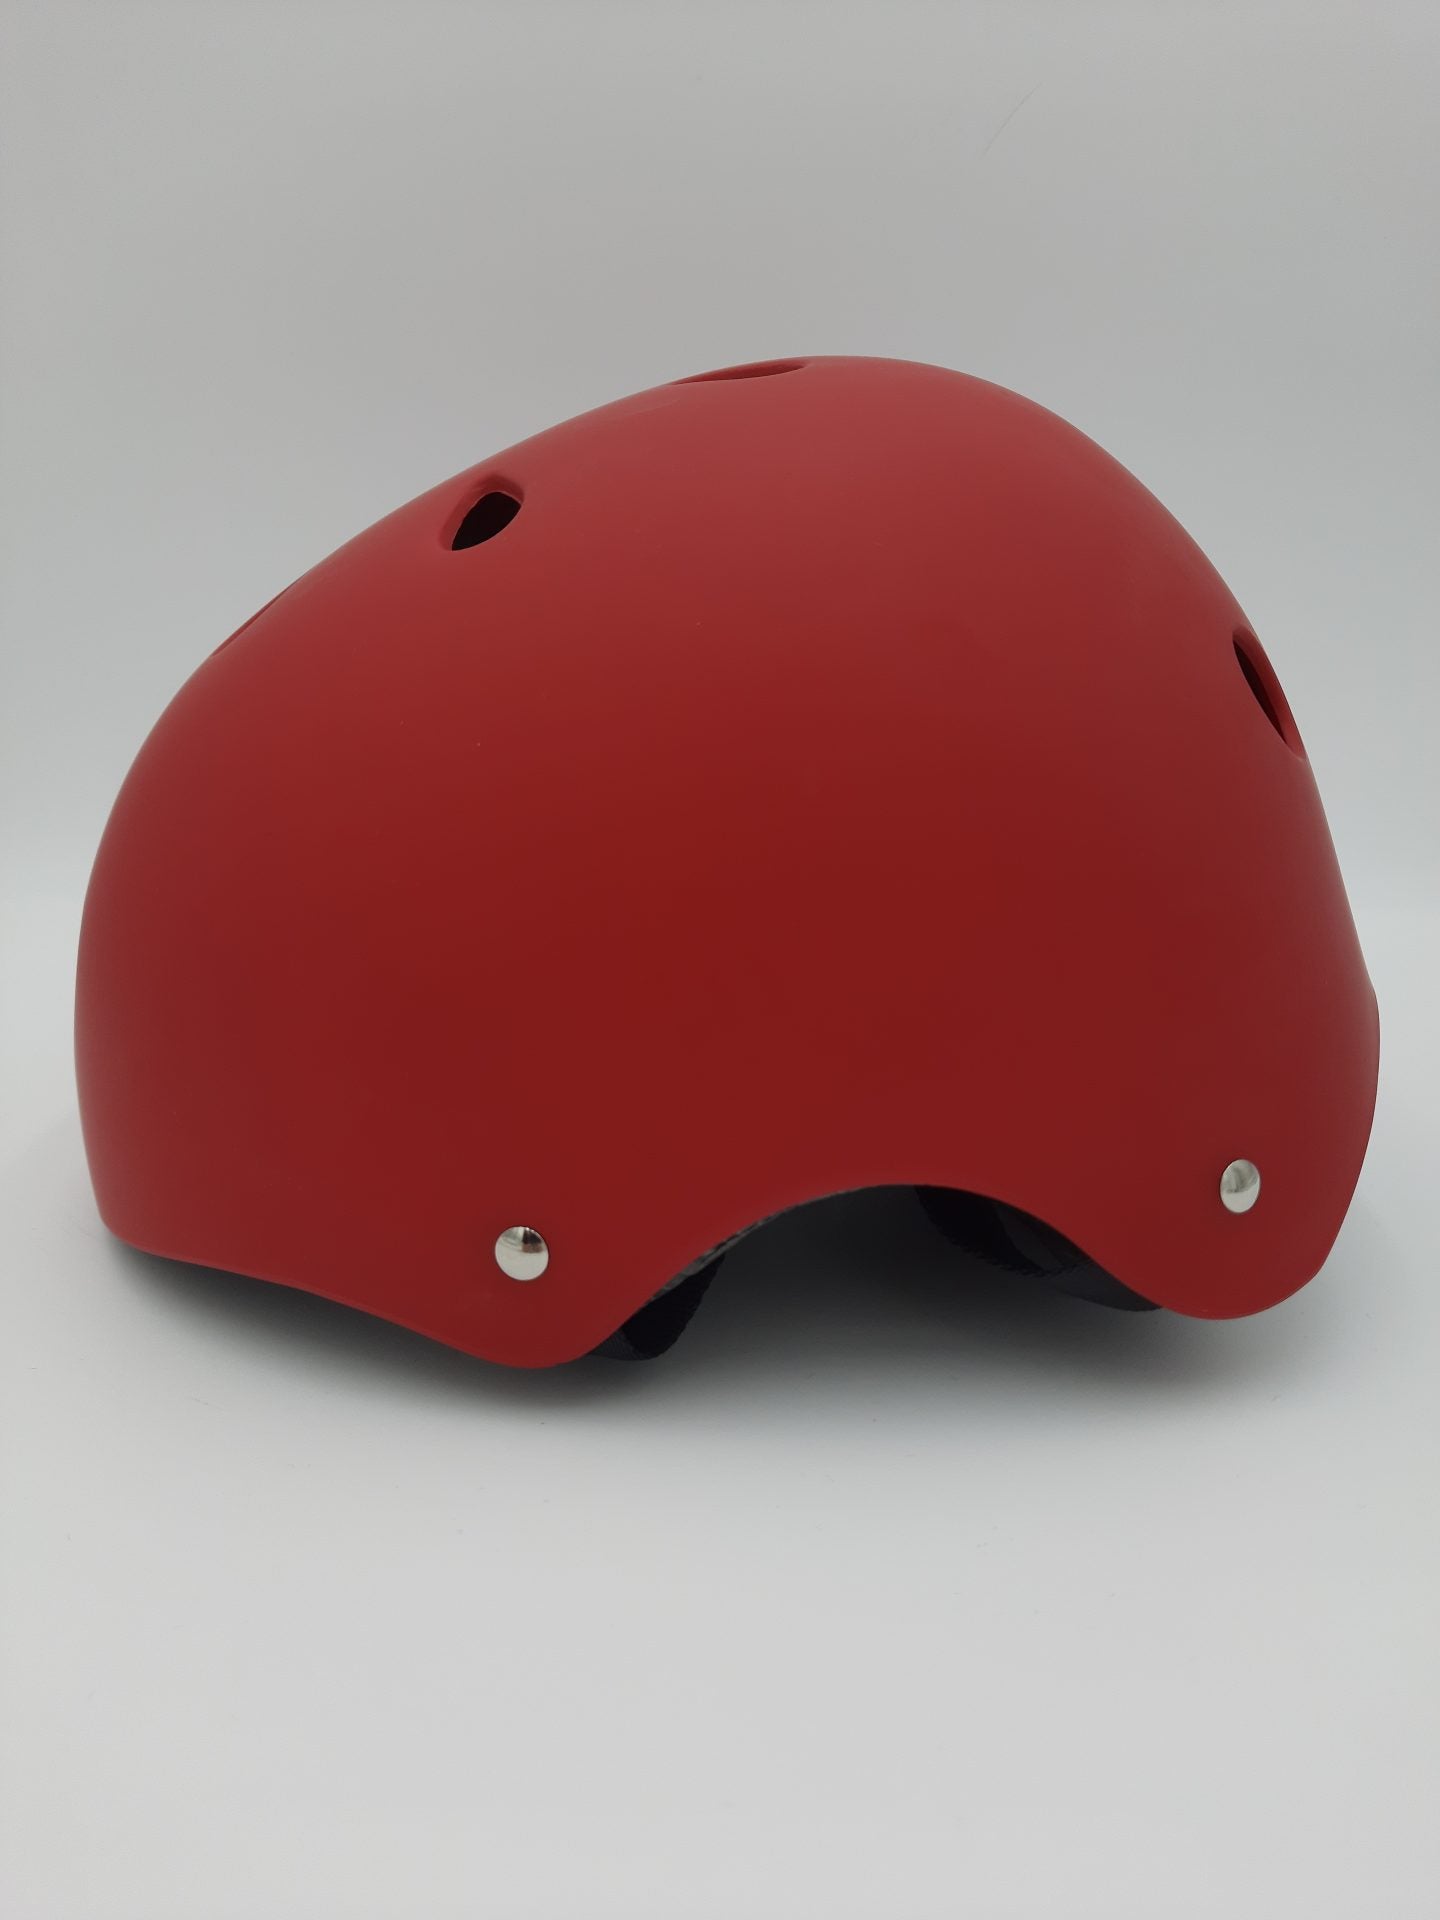 HUTCH Multi-Sport Helmet (53-56) in Matt Red